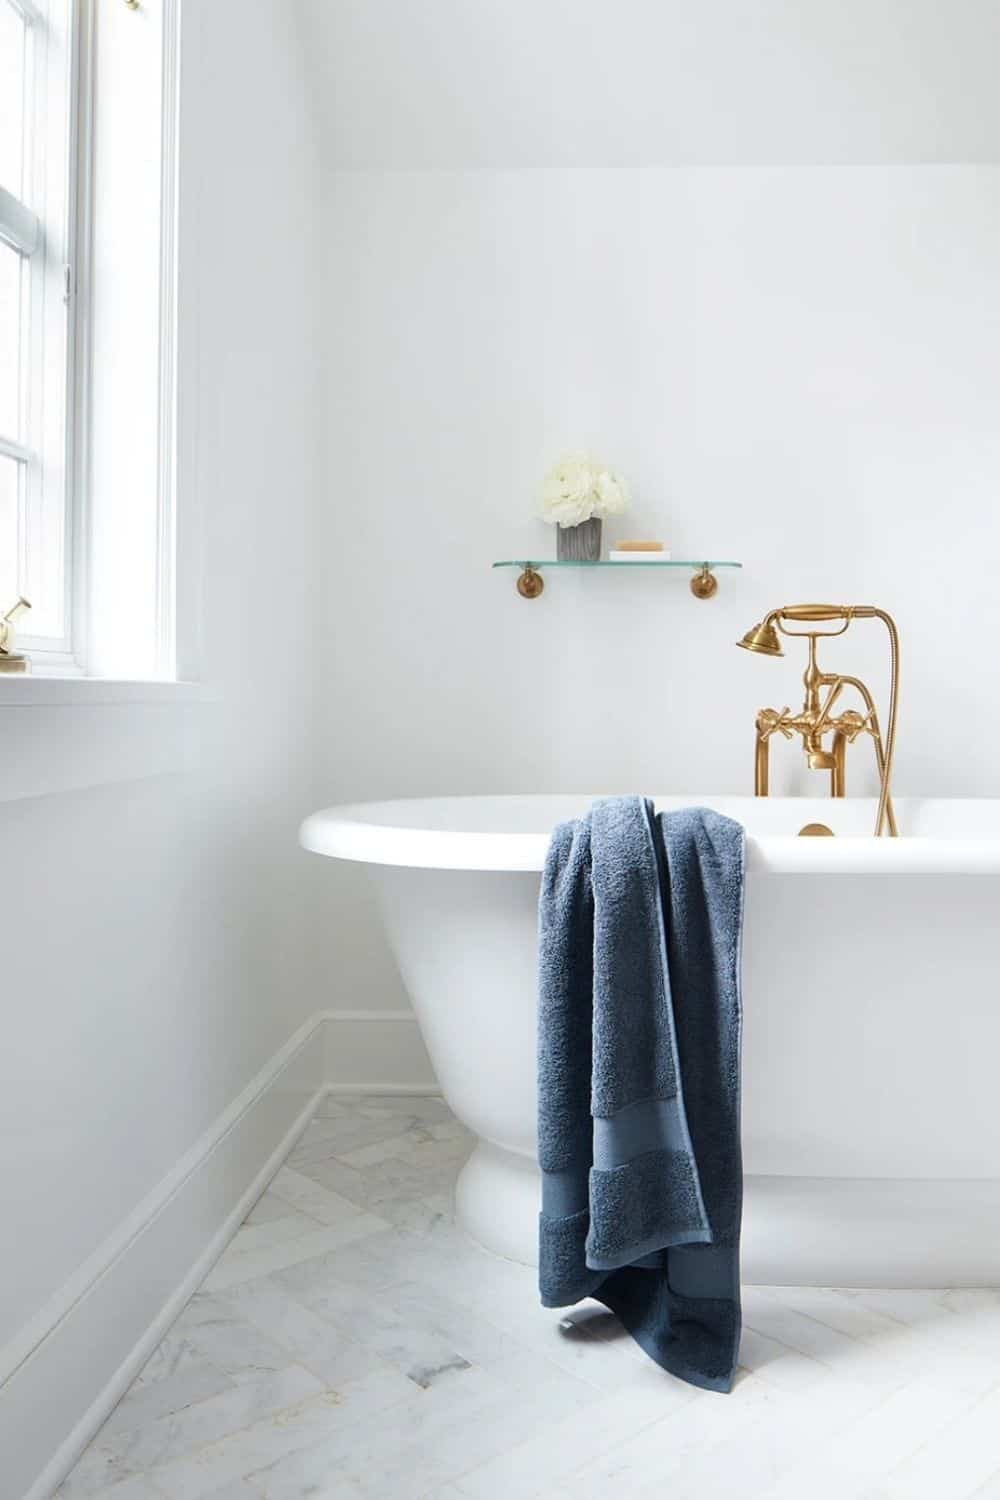 我们将淋浴性能提升到一个新的水平，使用最可持续的浴室品牌的有机毛巾和亚麻。图片来自Boll & Branch #有机毛巾#有机棉毛巾#有机棉浴巾#最佳有机毛巾#可持续丛林